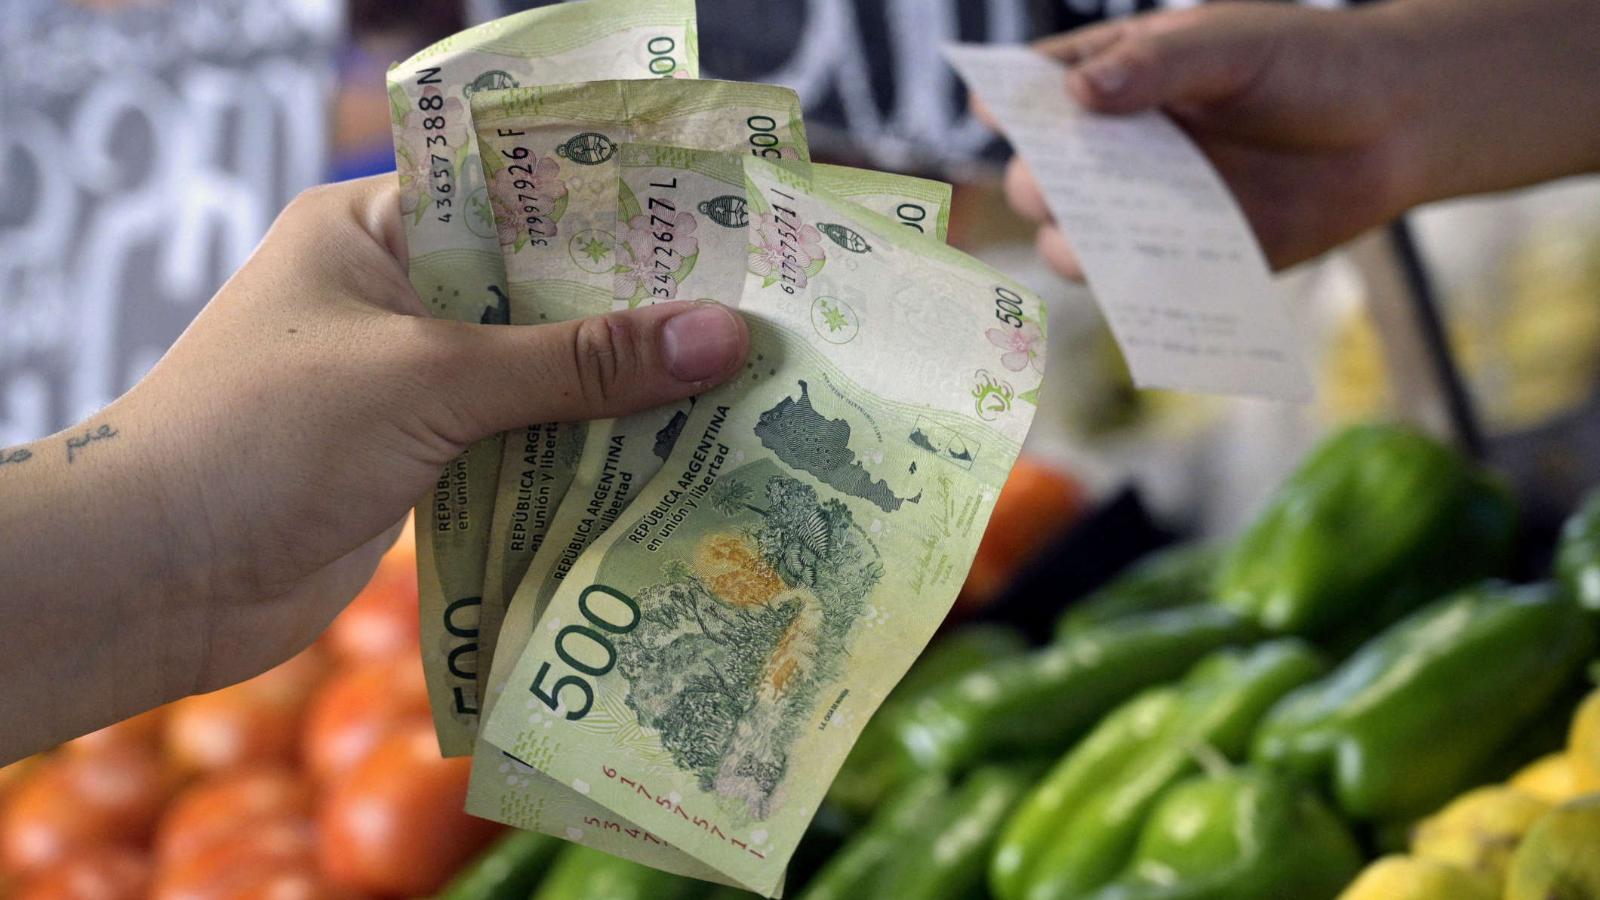 La inflación podría ser una trampa sin salida, según el economista David Miazzo |  Video